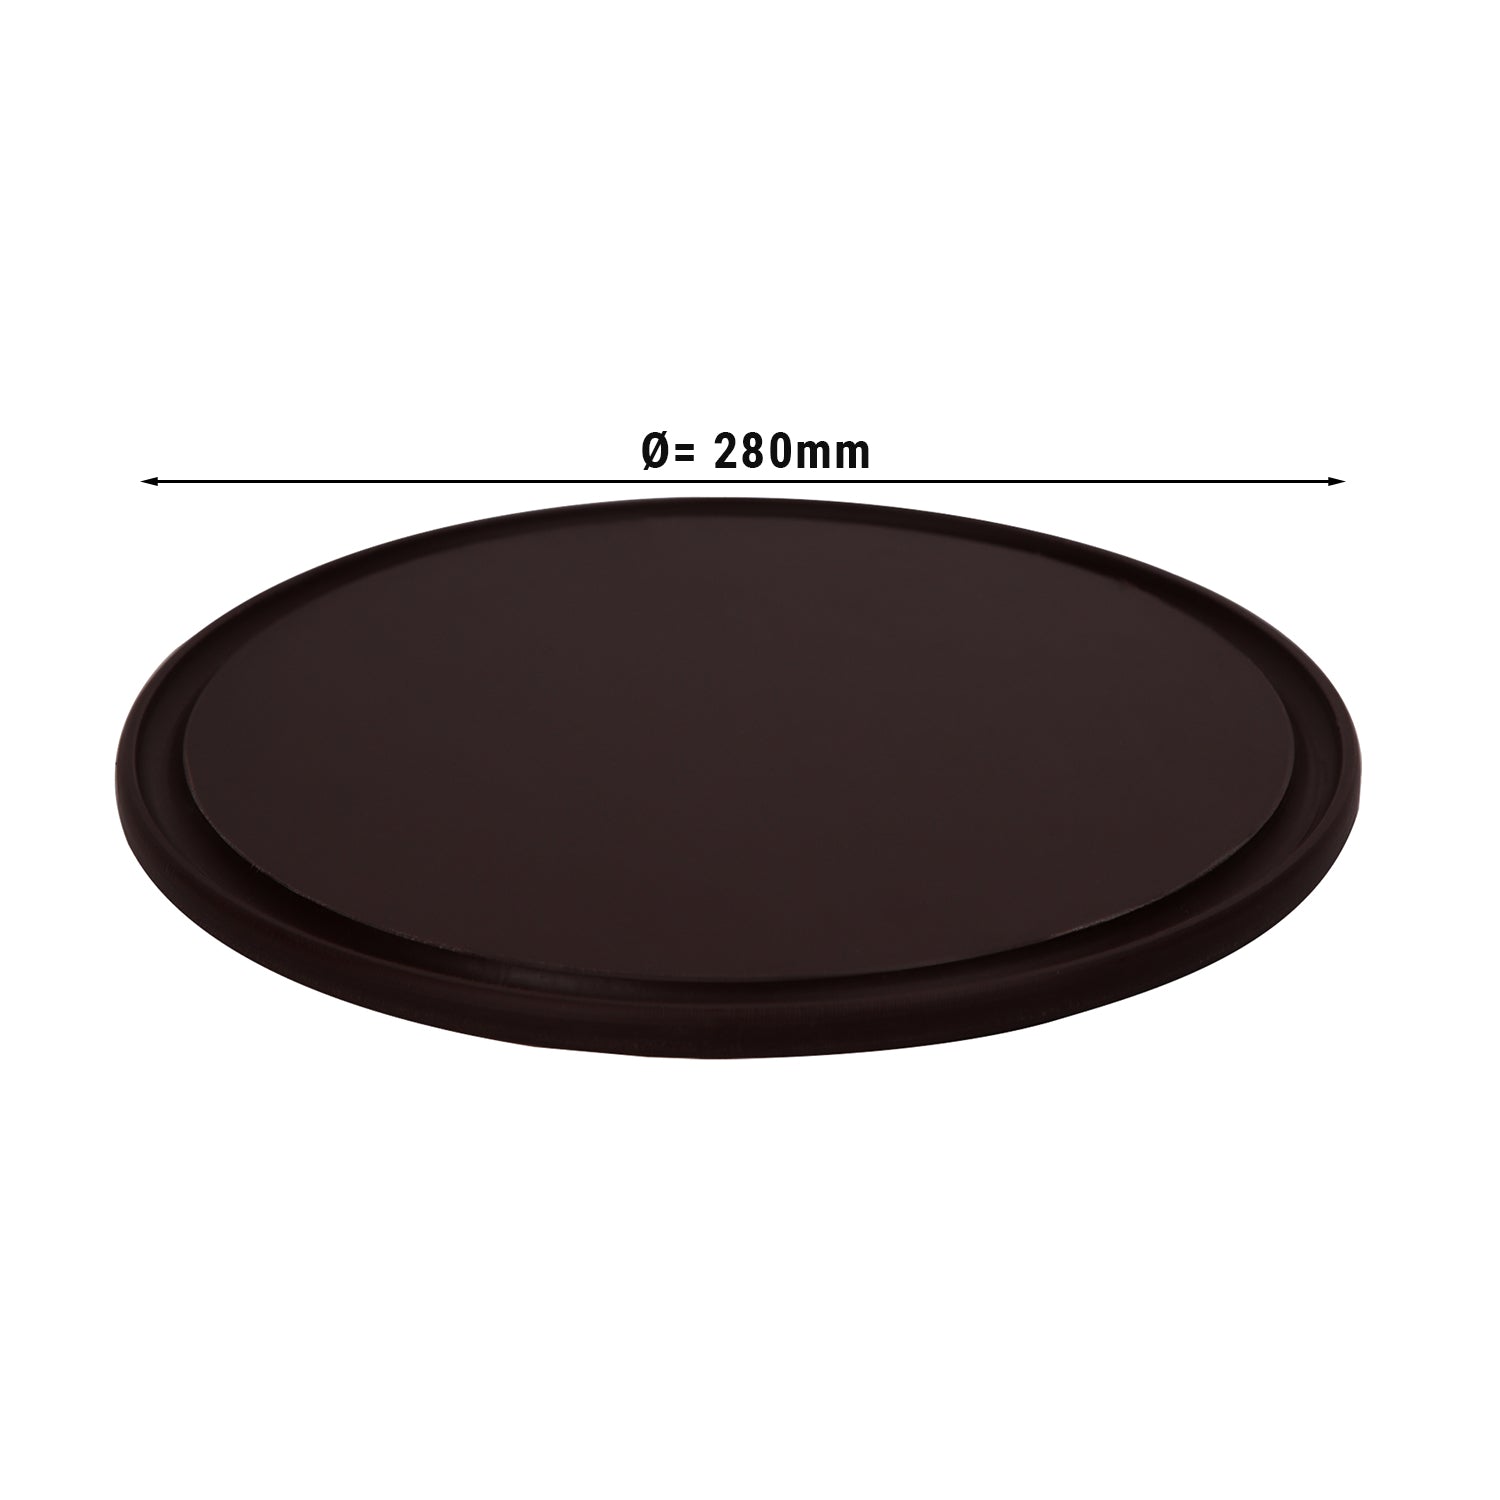 Pizzabakke - 28 cm i diameter